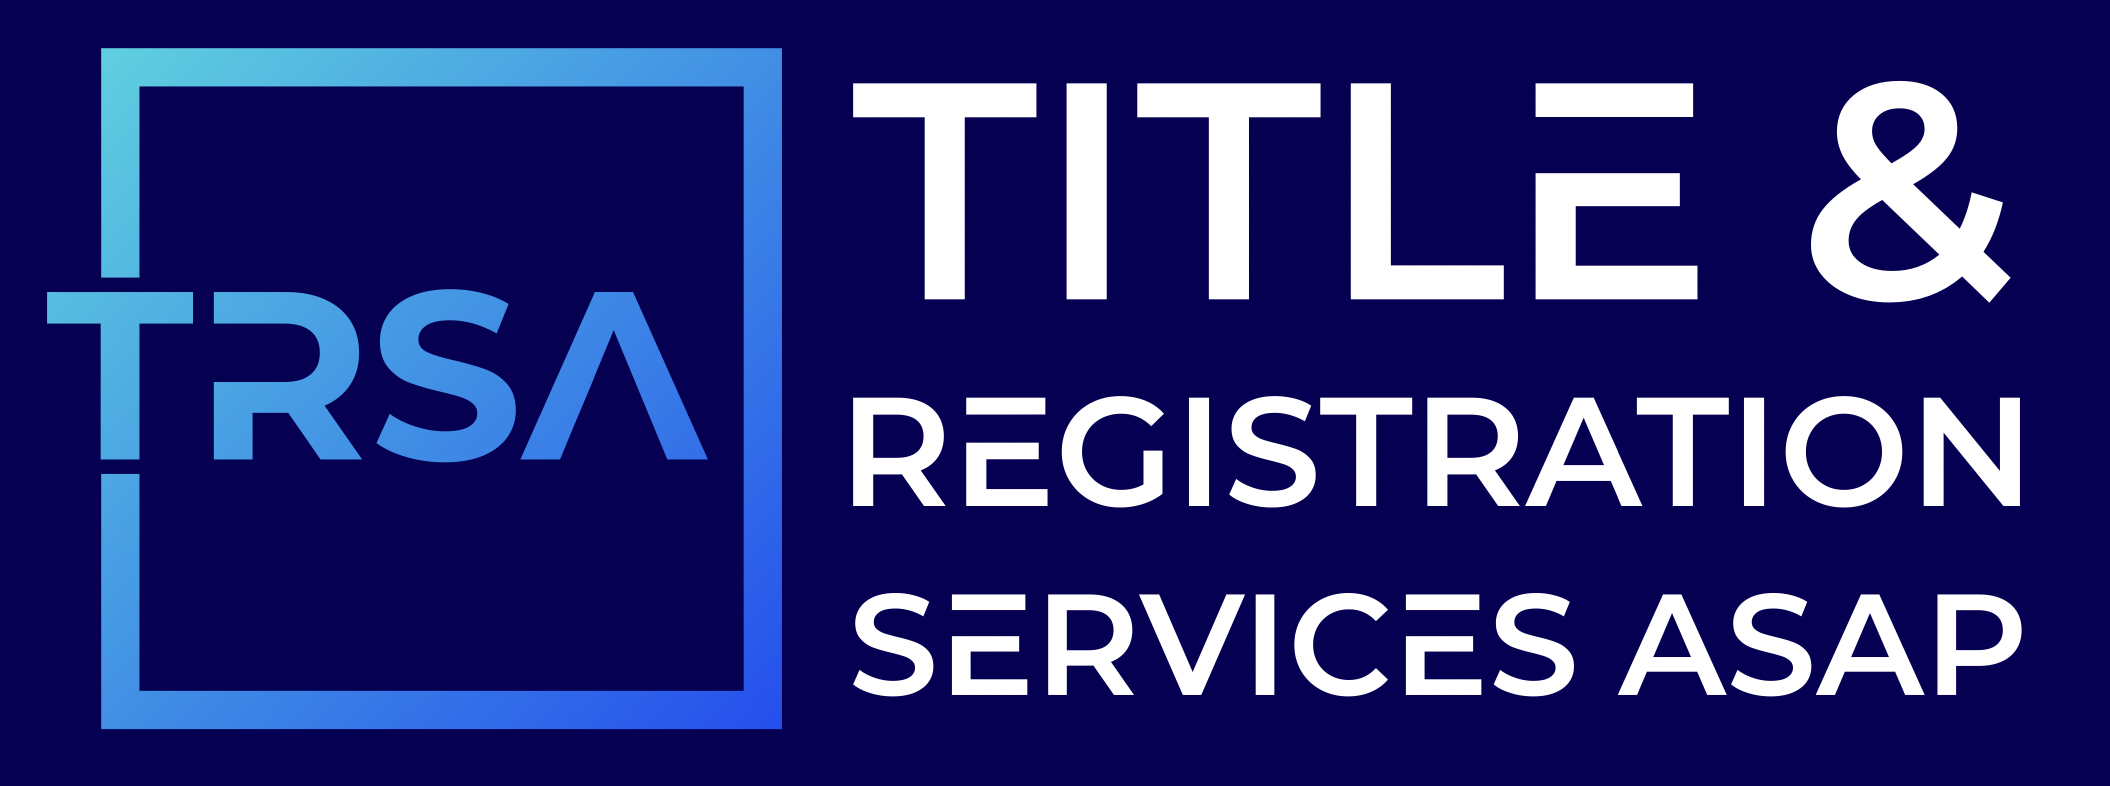 About Us | Title & Registration Services ASAP